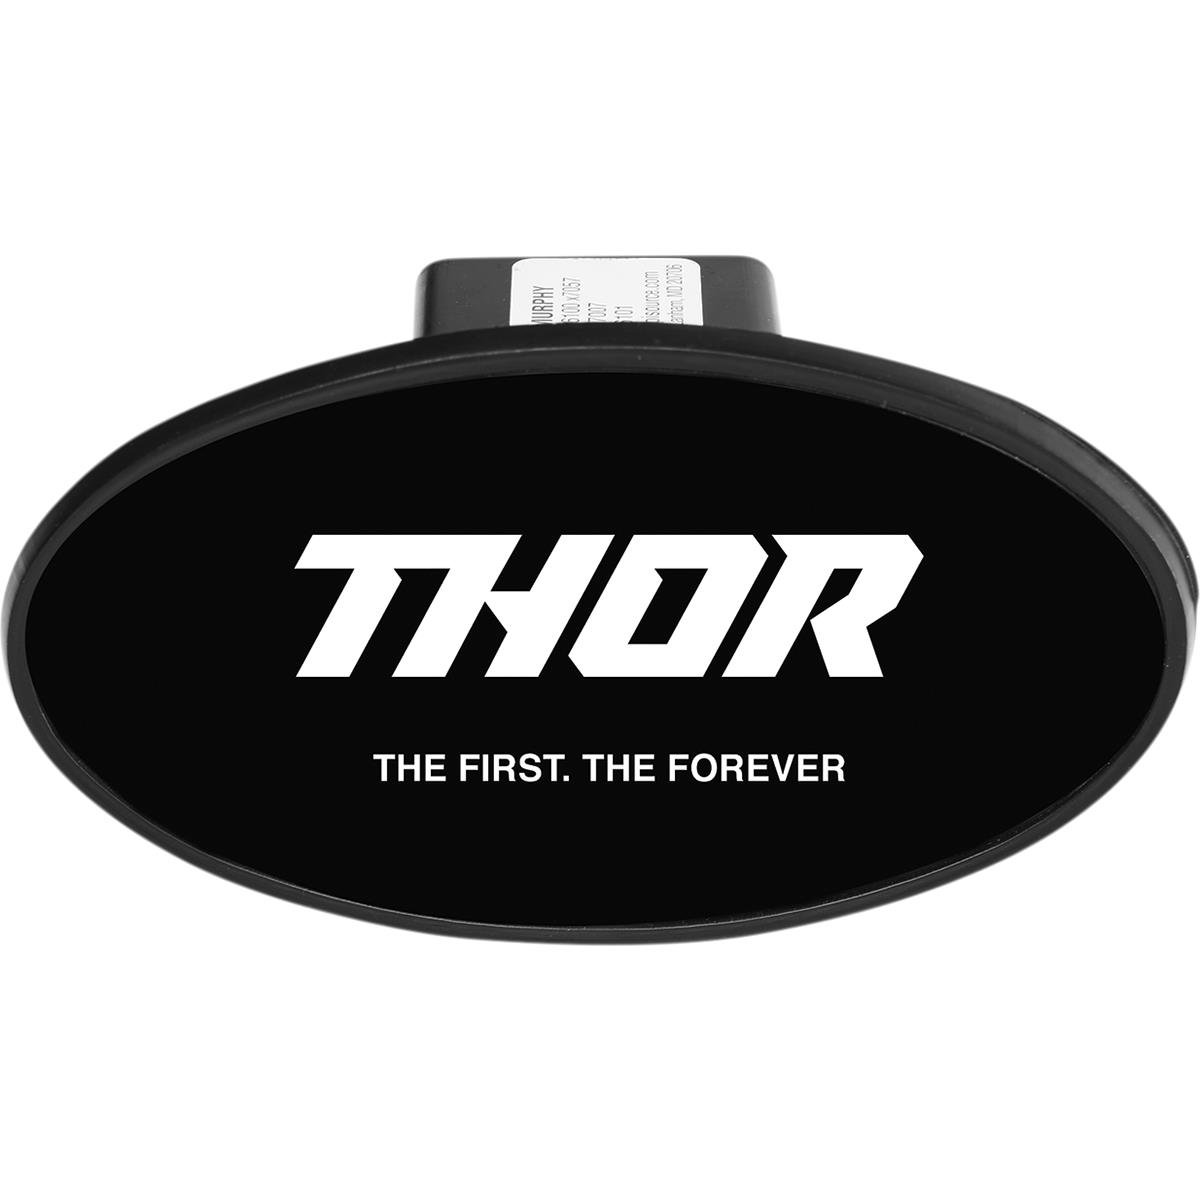 Thor Abdeckung für Anhängerkupplung Schwarz/Weiß